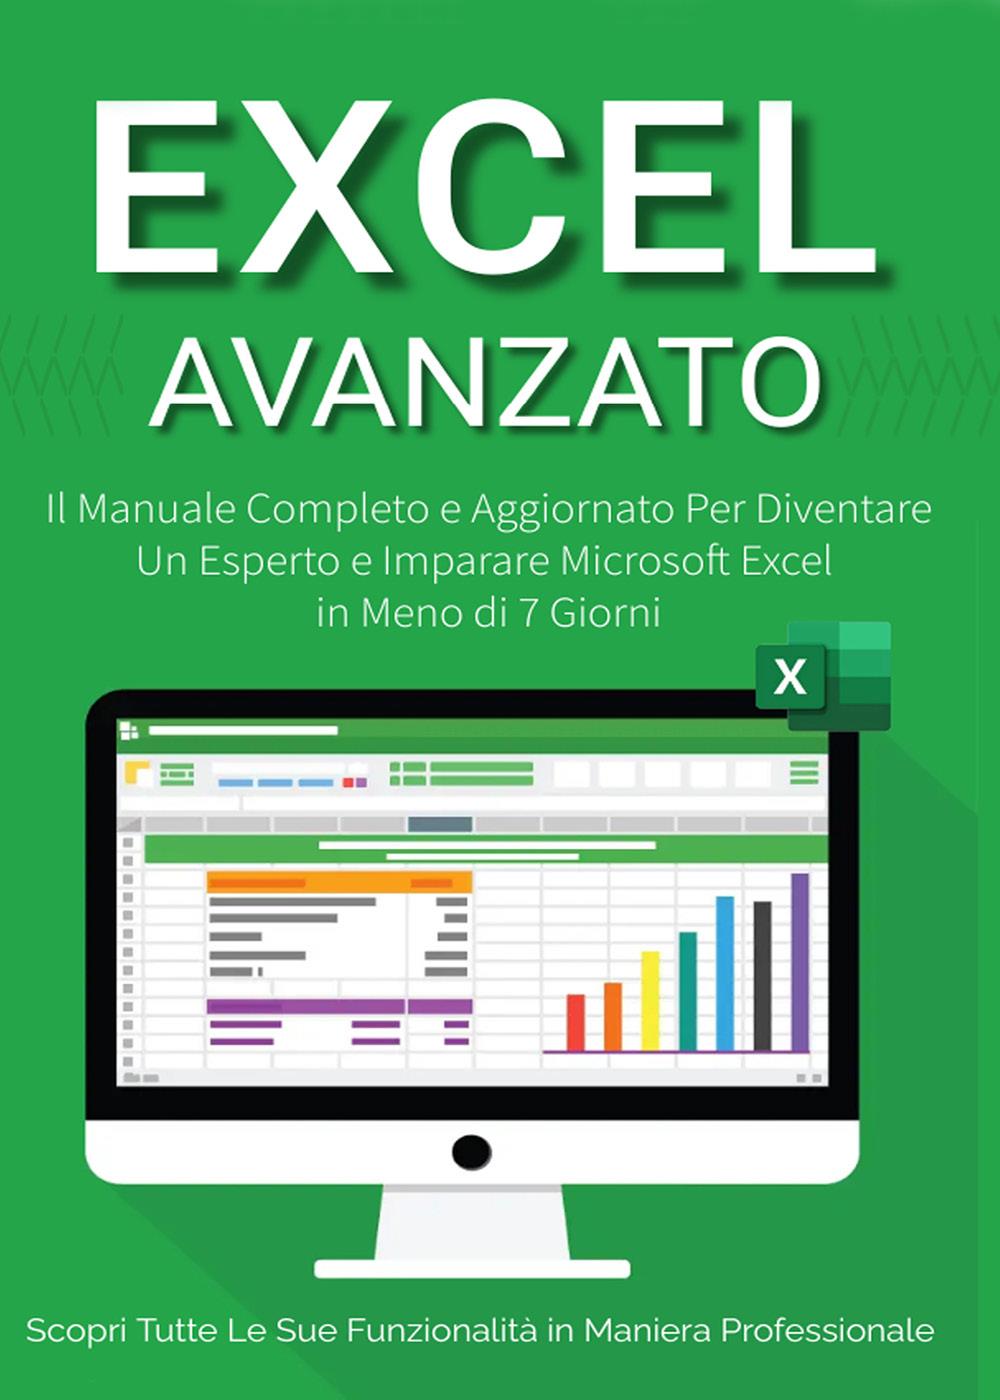 Excel Avanzato 2.0: Il Manuale Completo e Aggiornato Per Diventare un Esperto e Imparare Microsoft Excel in Meno di 7 Giorni. Scopri Tutte le Sue Funzionalità  in Maniera Professionale